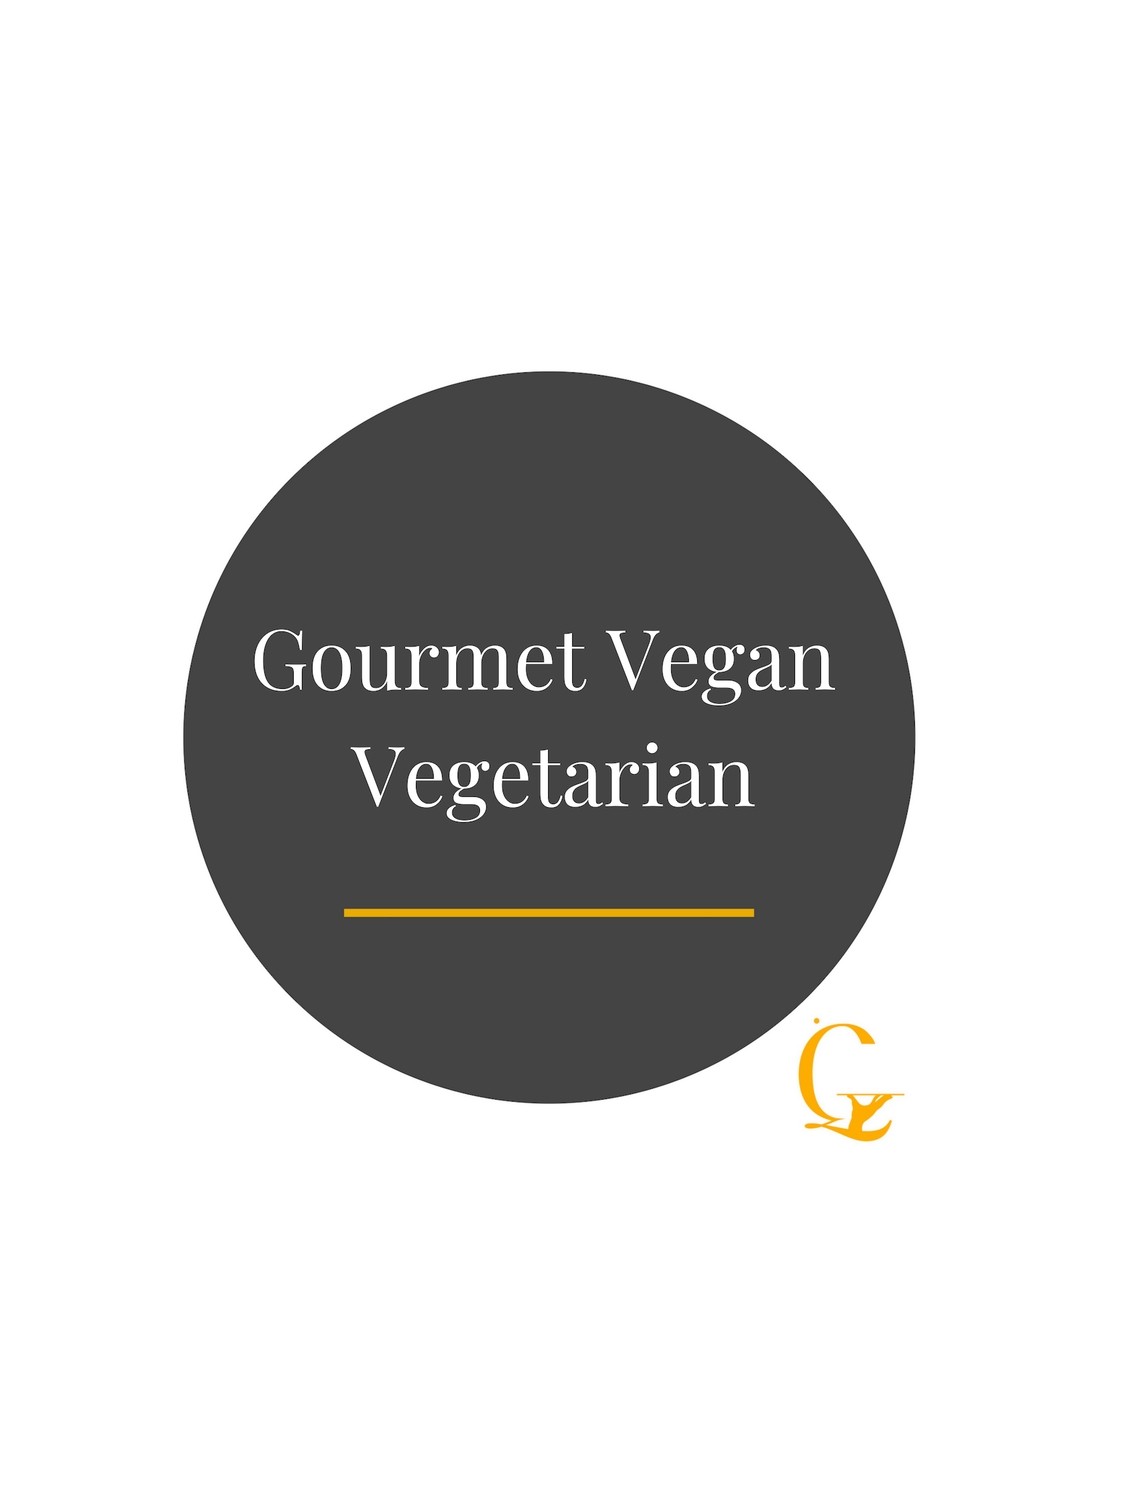 ​Gourmet Vegan Vegetarian​